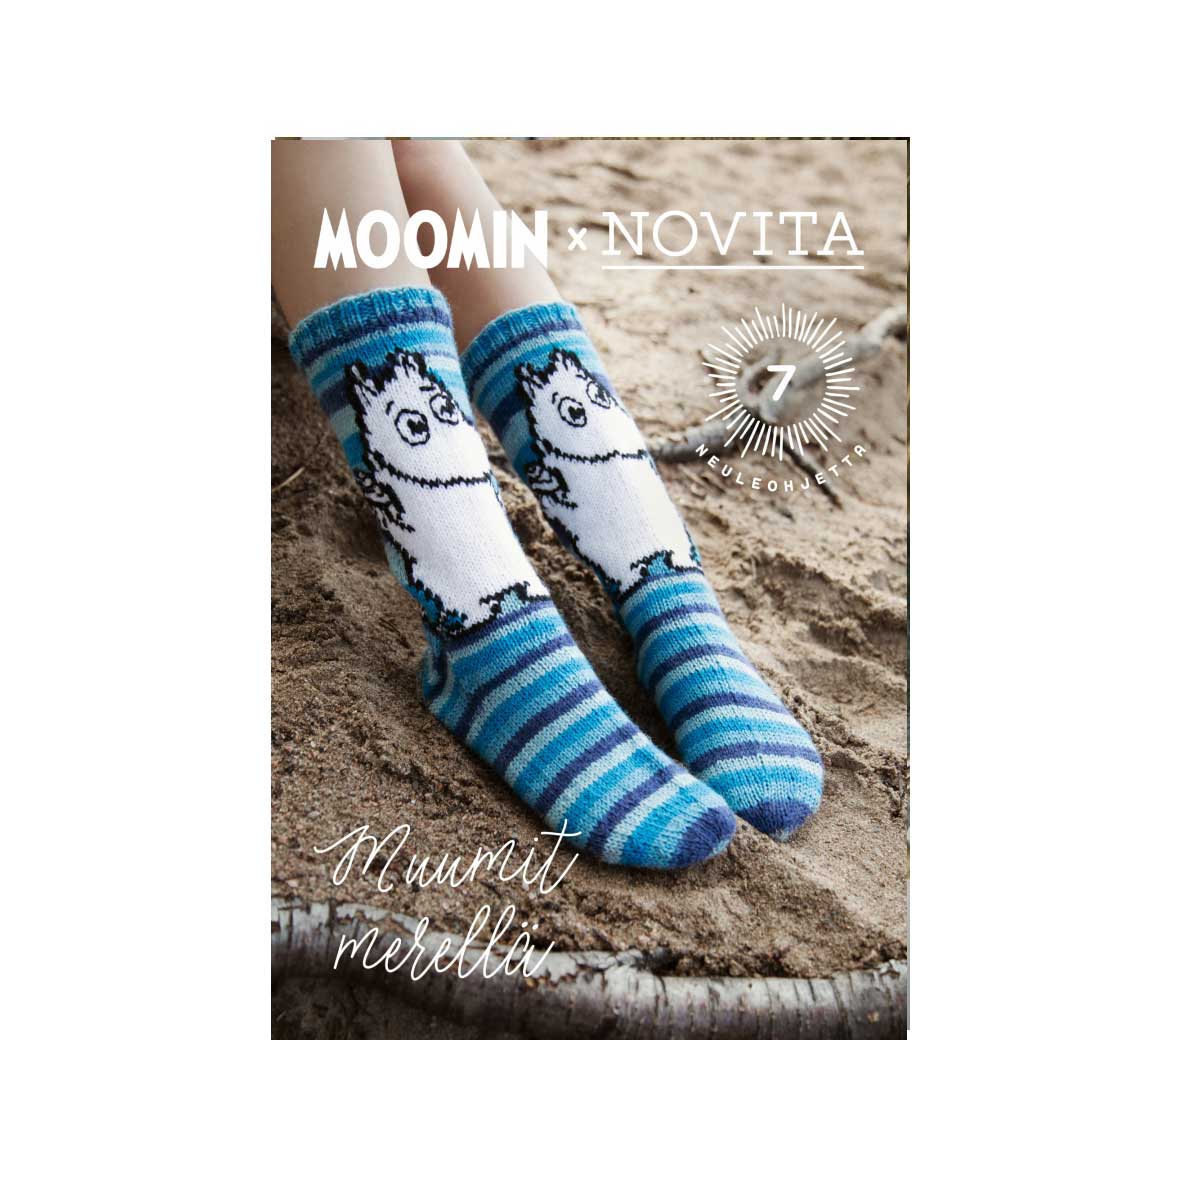 Журнал Moomin x Novita - Muumit Merellä, 2020